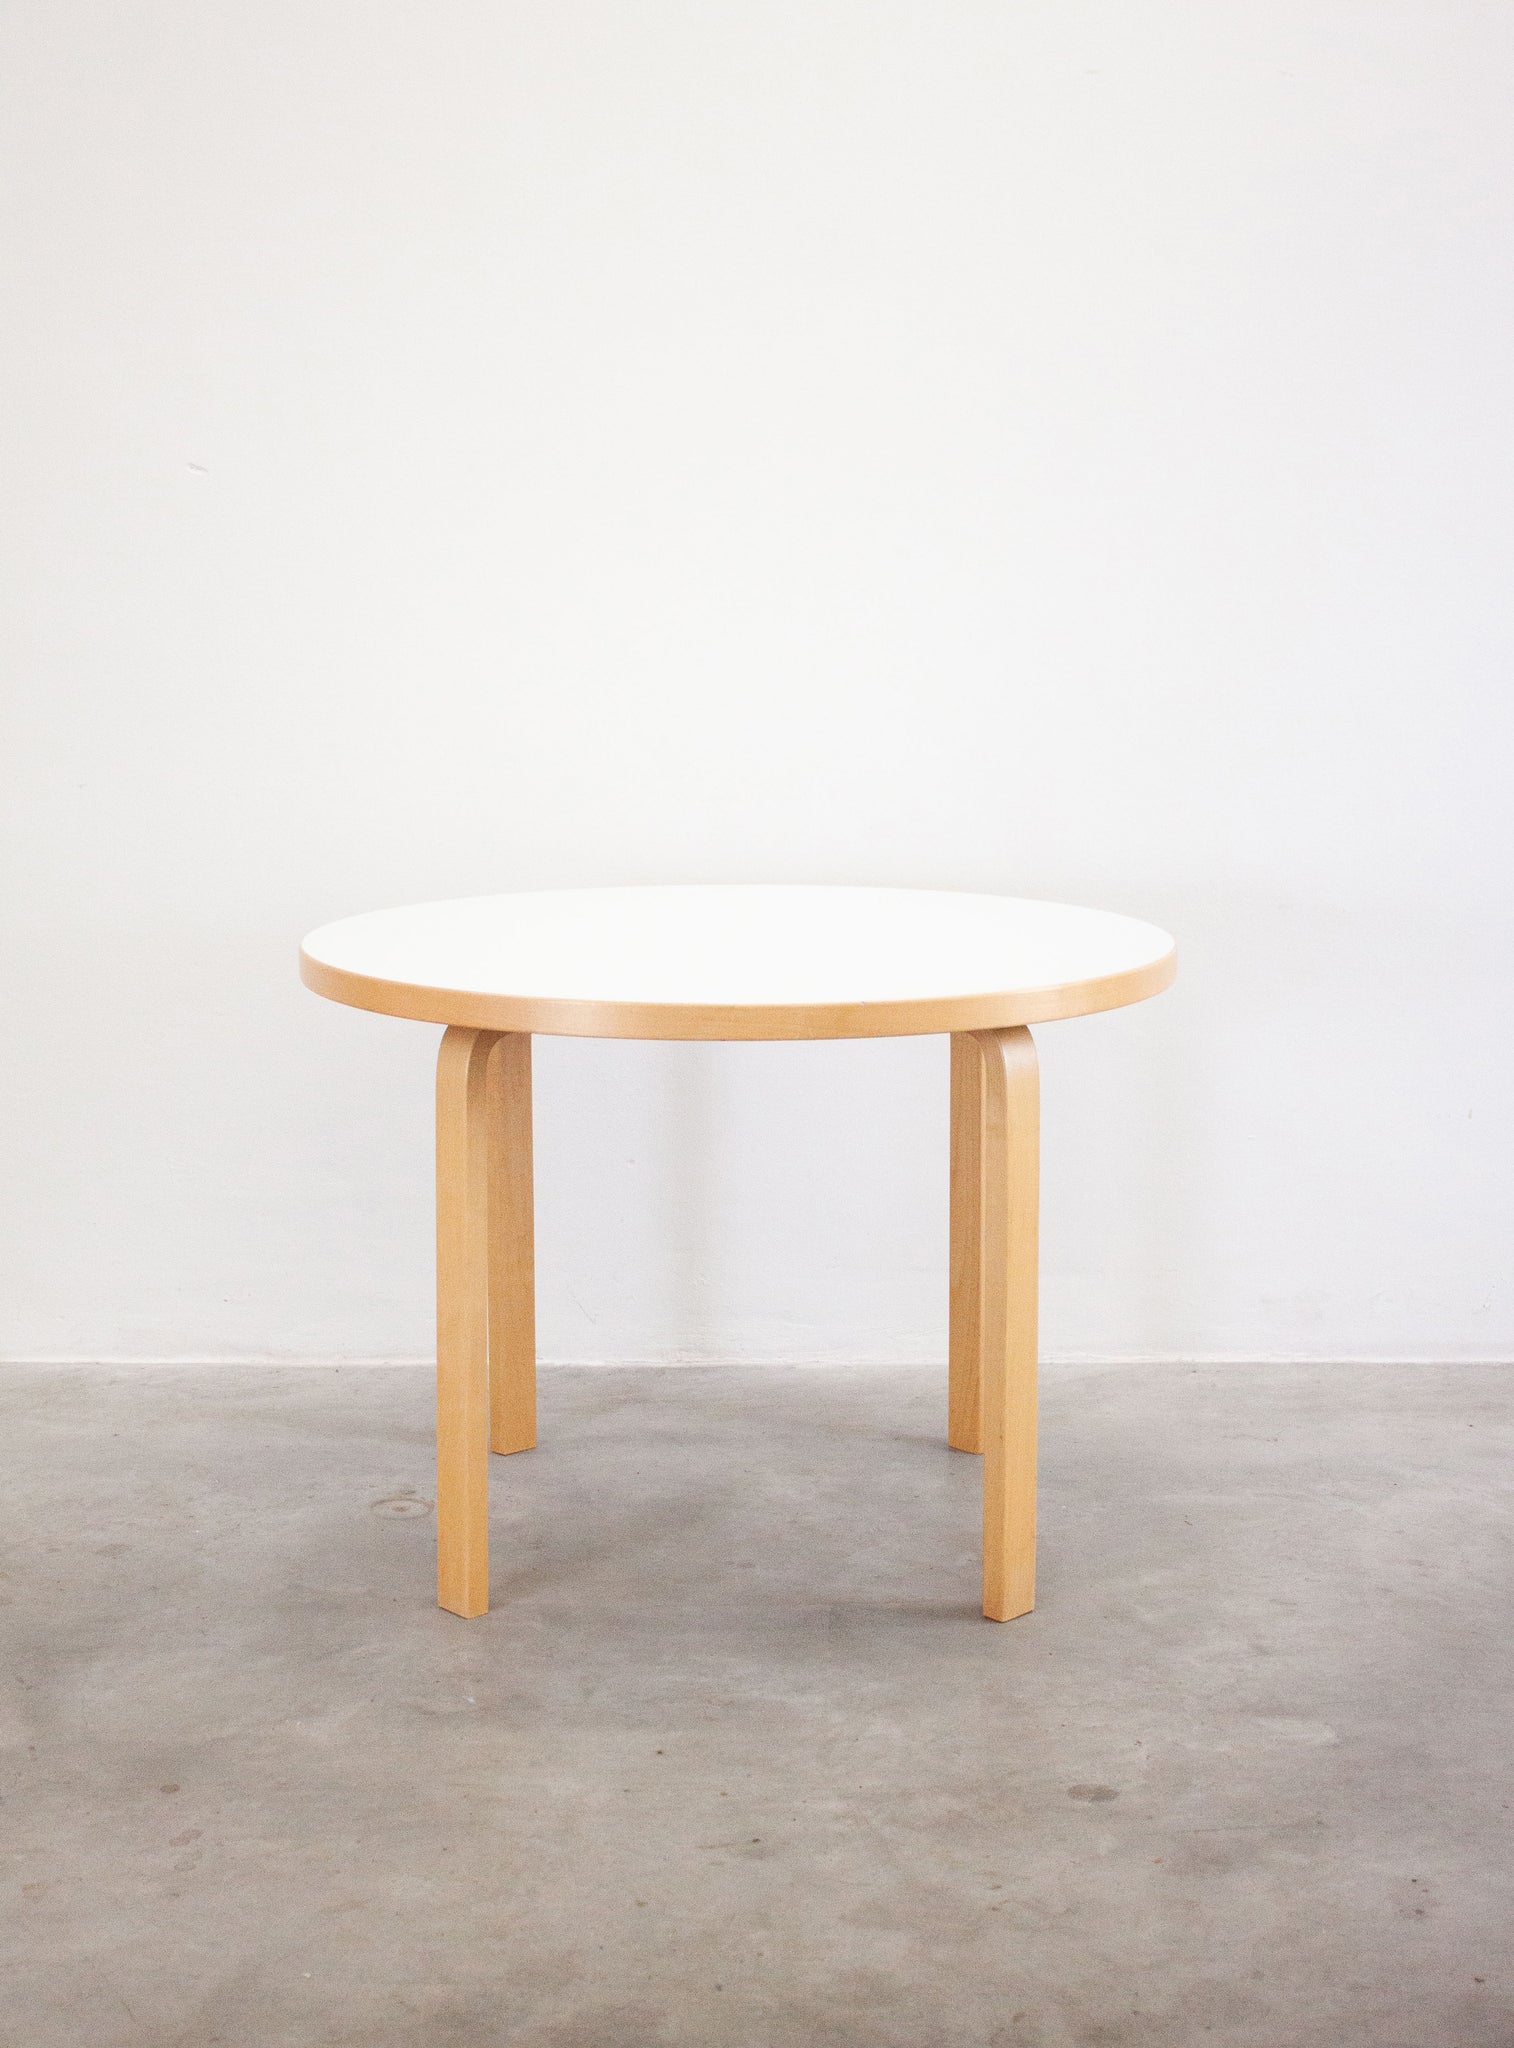 Artek Model 90A Dining Table by Alvar Aalto (White)